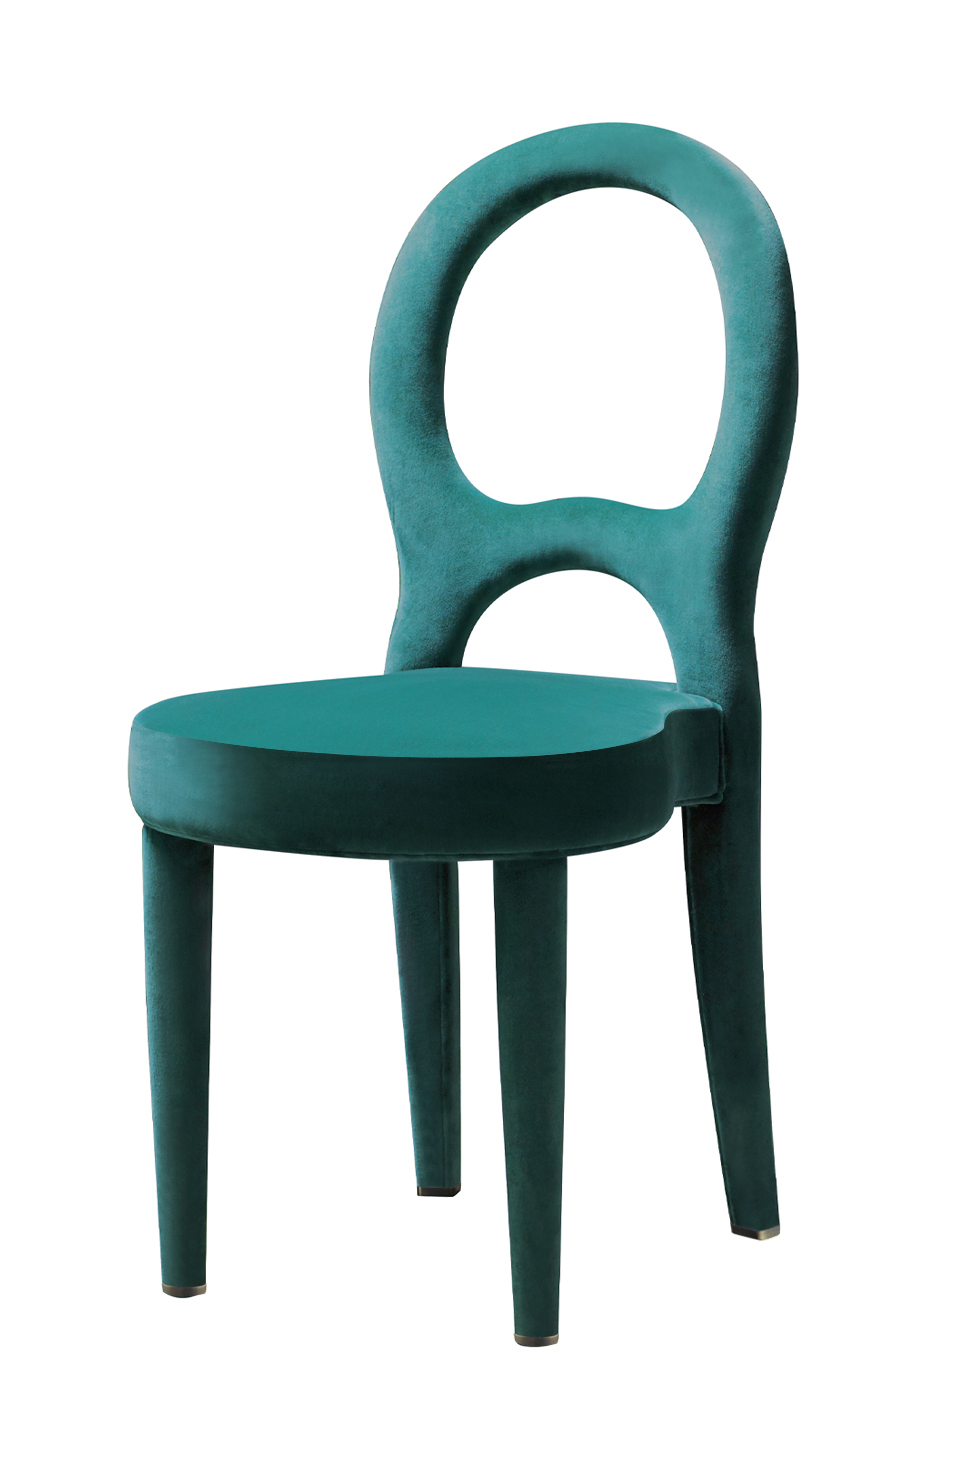 Bilou Bilou — это обеденный стул с отделкой из бархата и льна или из кожи наппа, доступный в различных цветах и трех размерах: стандартном, большом и для детей. Bilou Bilou — самый культовый обеденный стул из каталога Promemoria | Promemoria